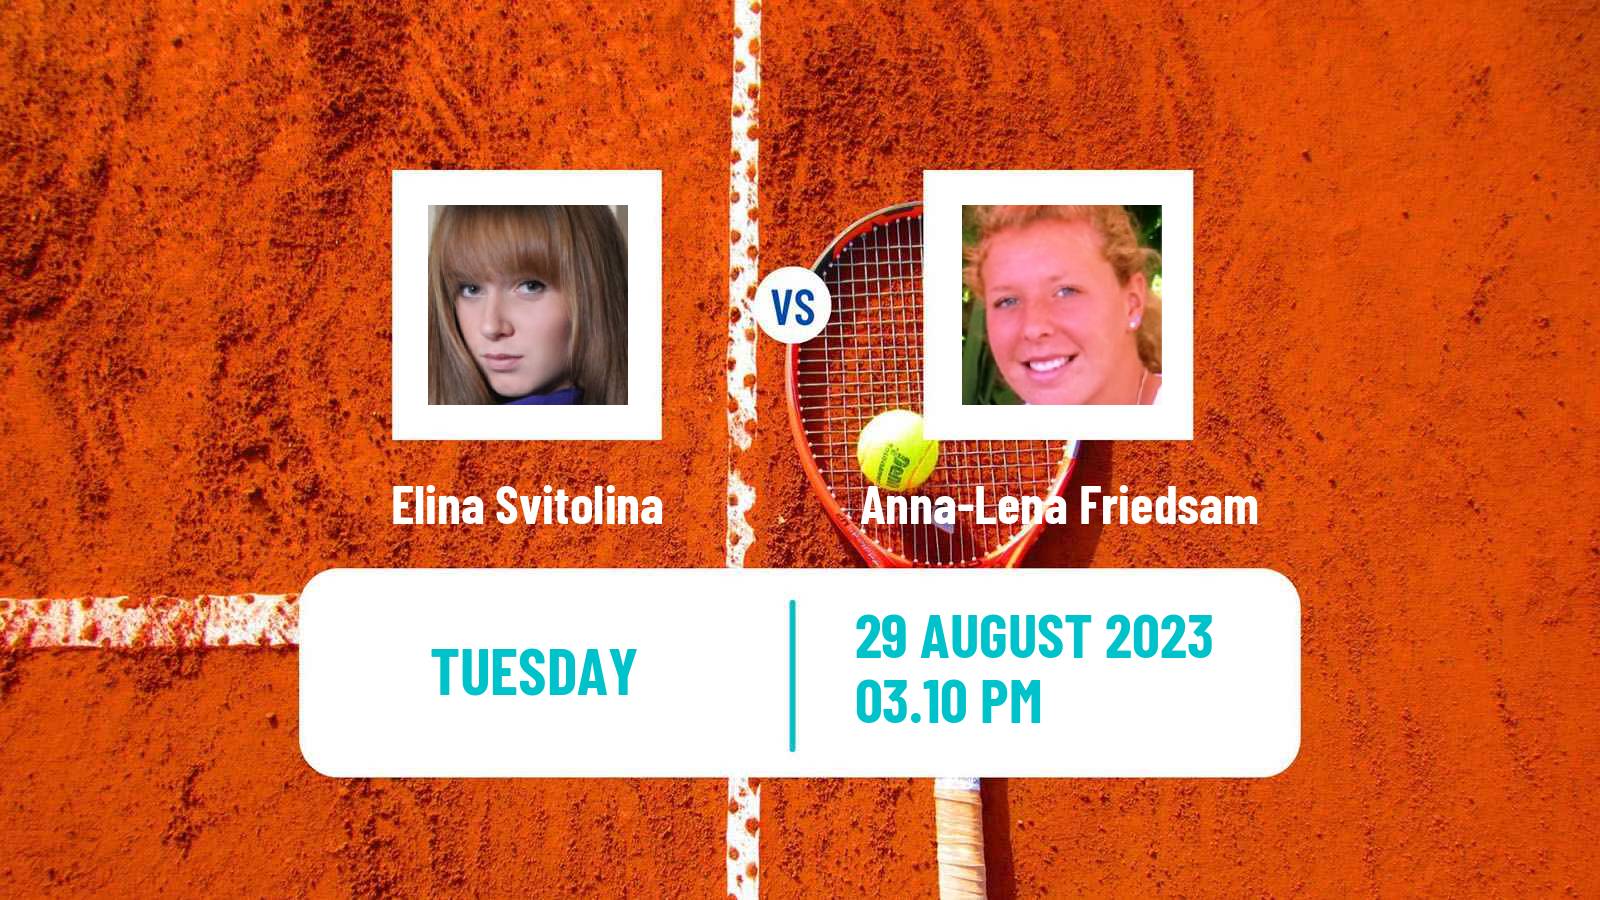 Tennis WTA US Open Elina Svitolina - Anna-Lena Friedsam